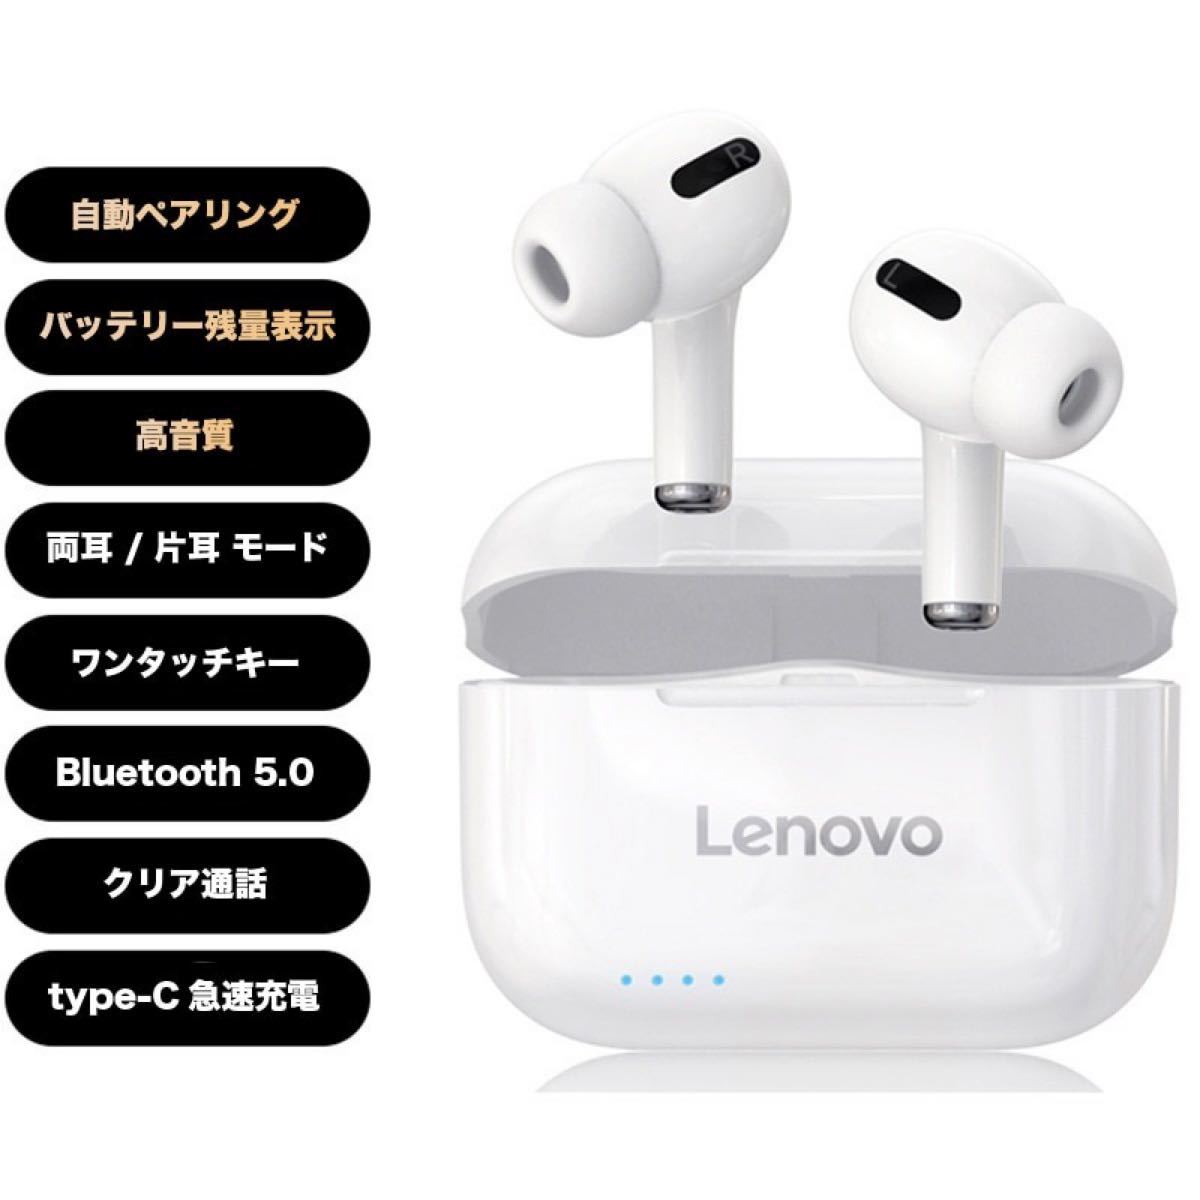 商い Lenovo ワイヤレス イヤホン opri.sg